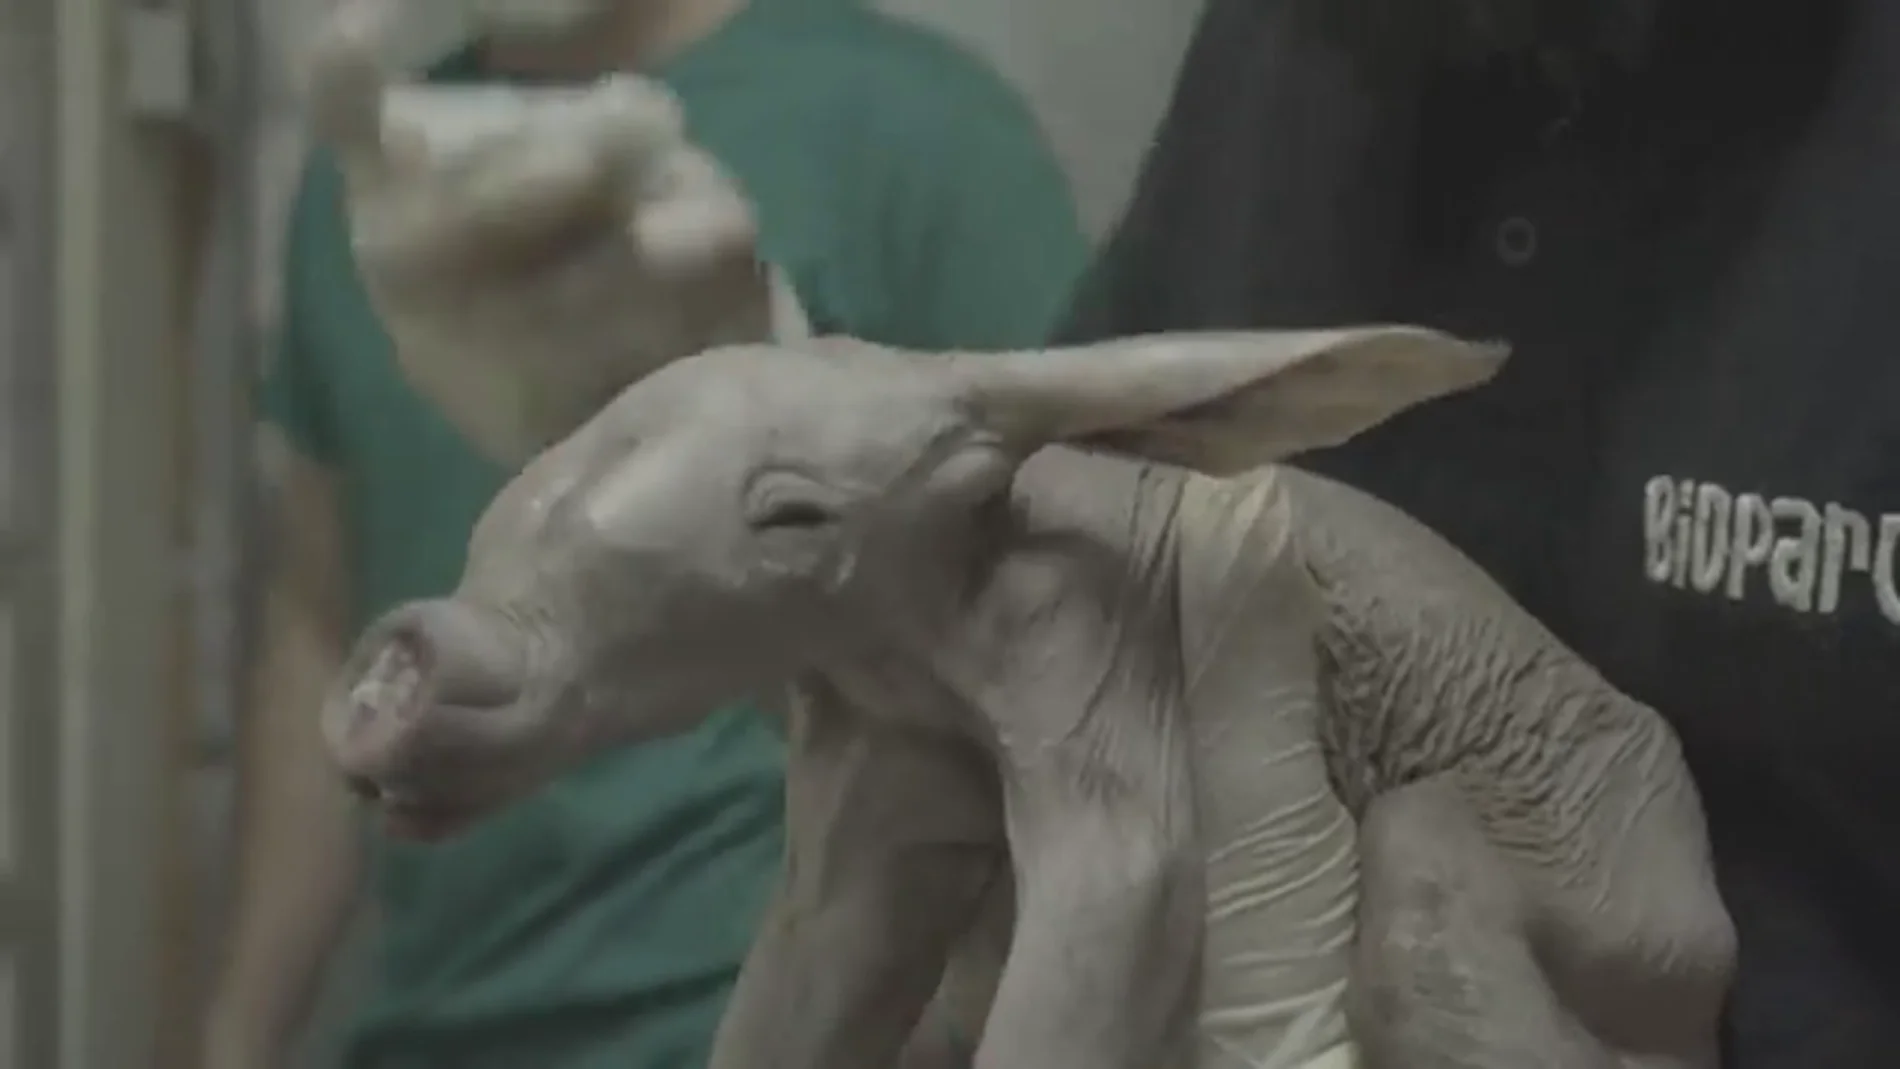 Nace un oricteropo, también conocido como cerdo hormiguero, en Bioparc